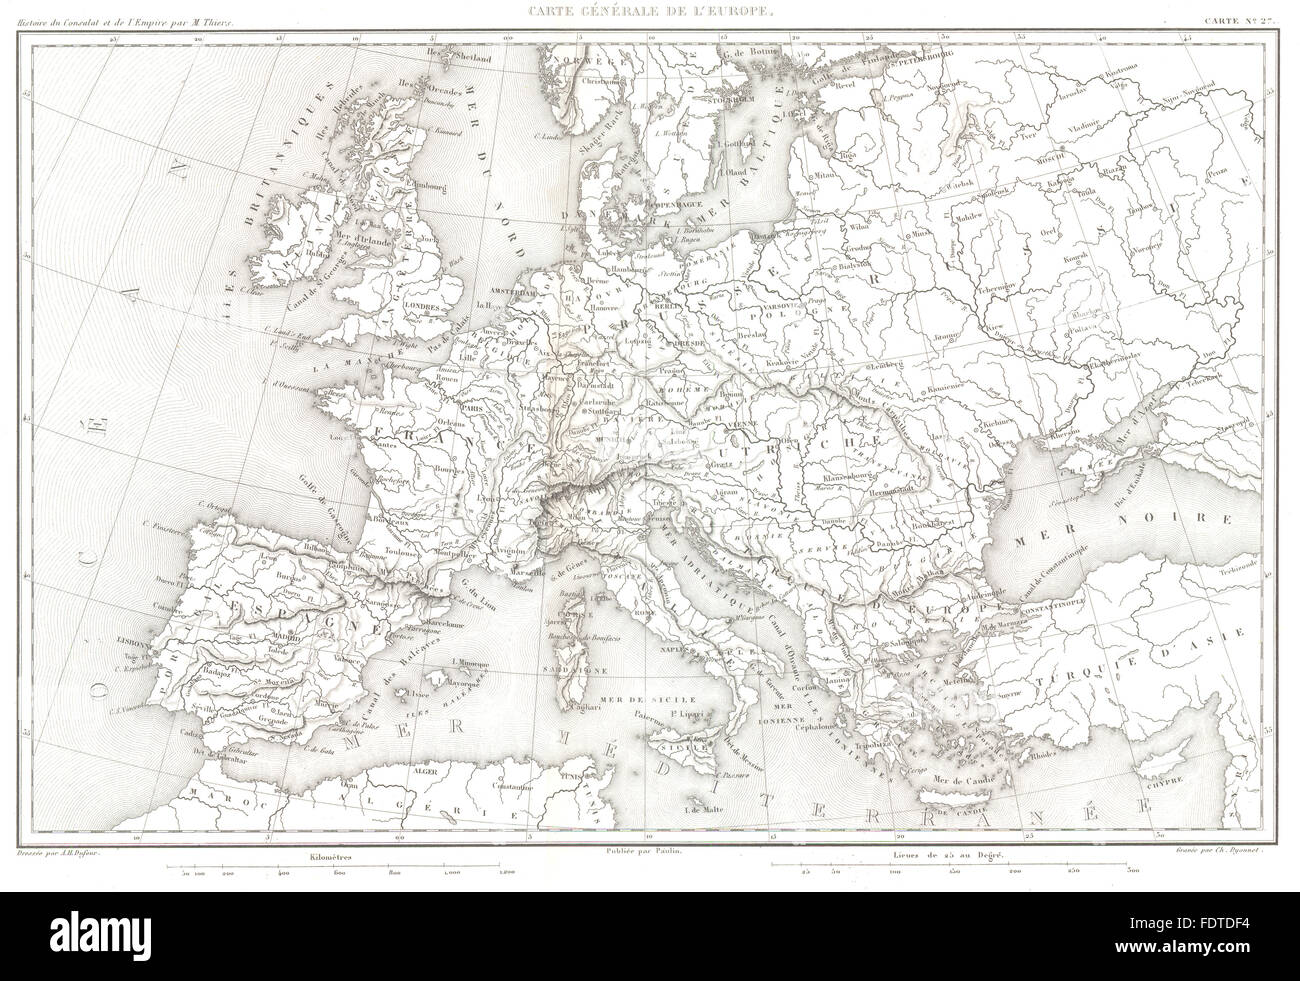 EUROPE: Carte Générale de L'Europe, 1859 antique map Stock Photo